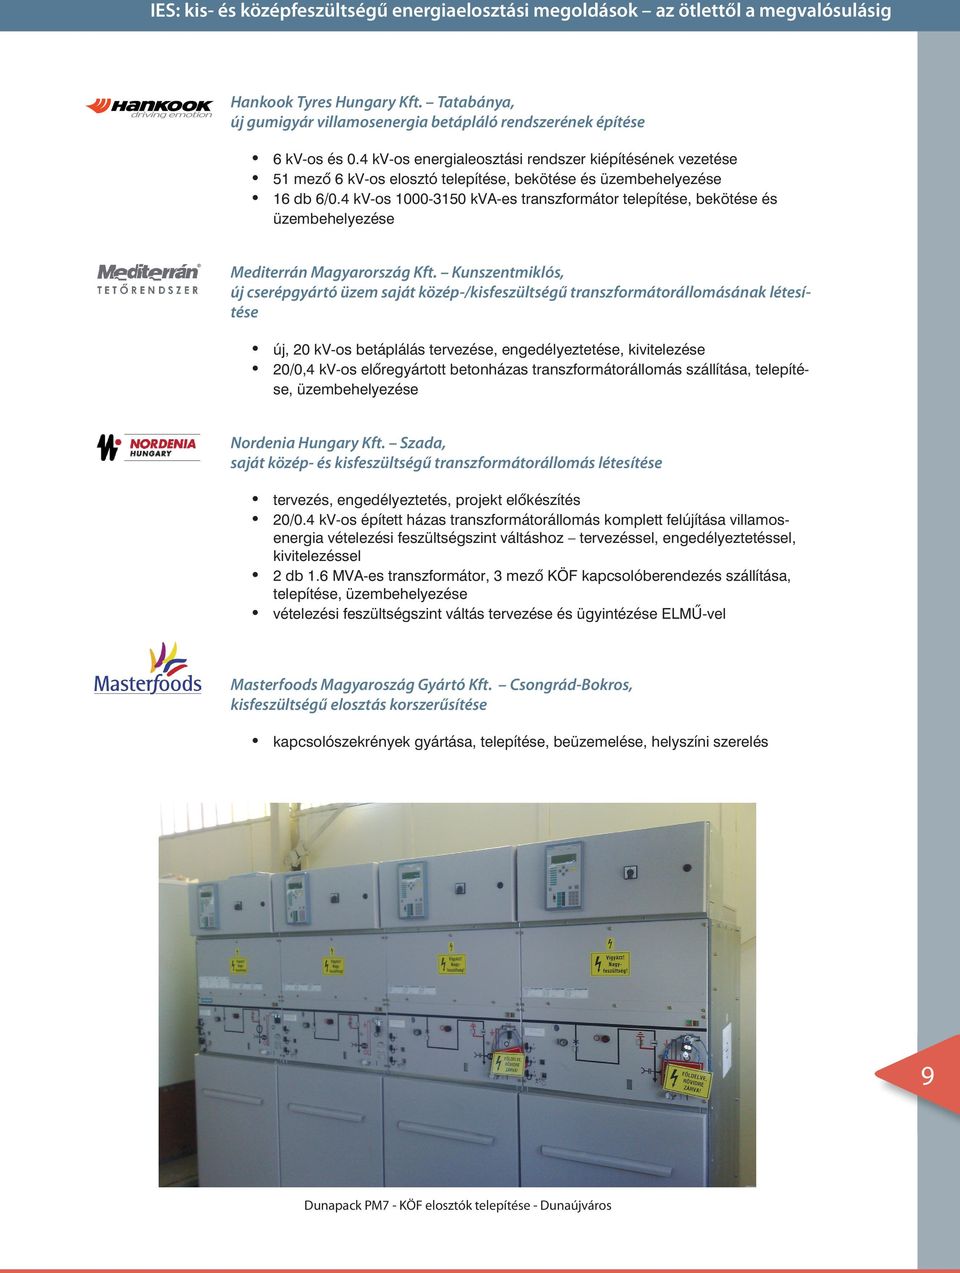 4 kv-os 1000-3150 kva-es transzformátor telepítése, bekötése és üzembehelyezése Mediterrán Magyarország Kft.